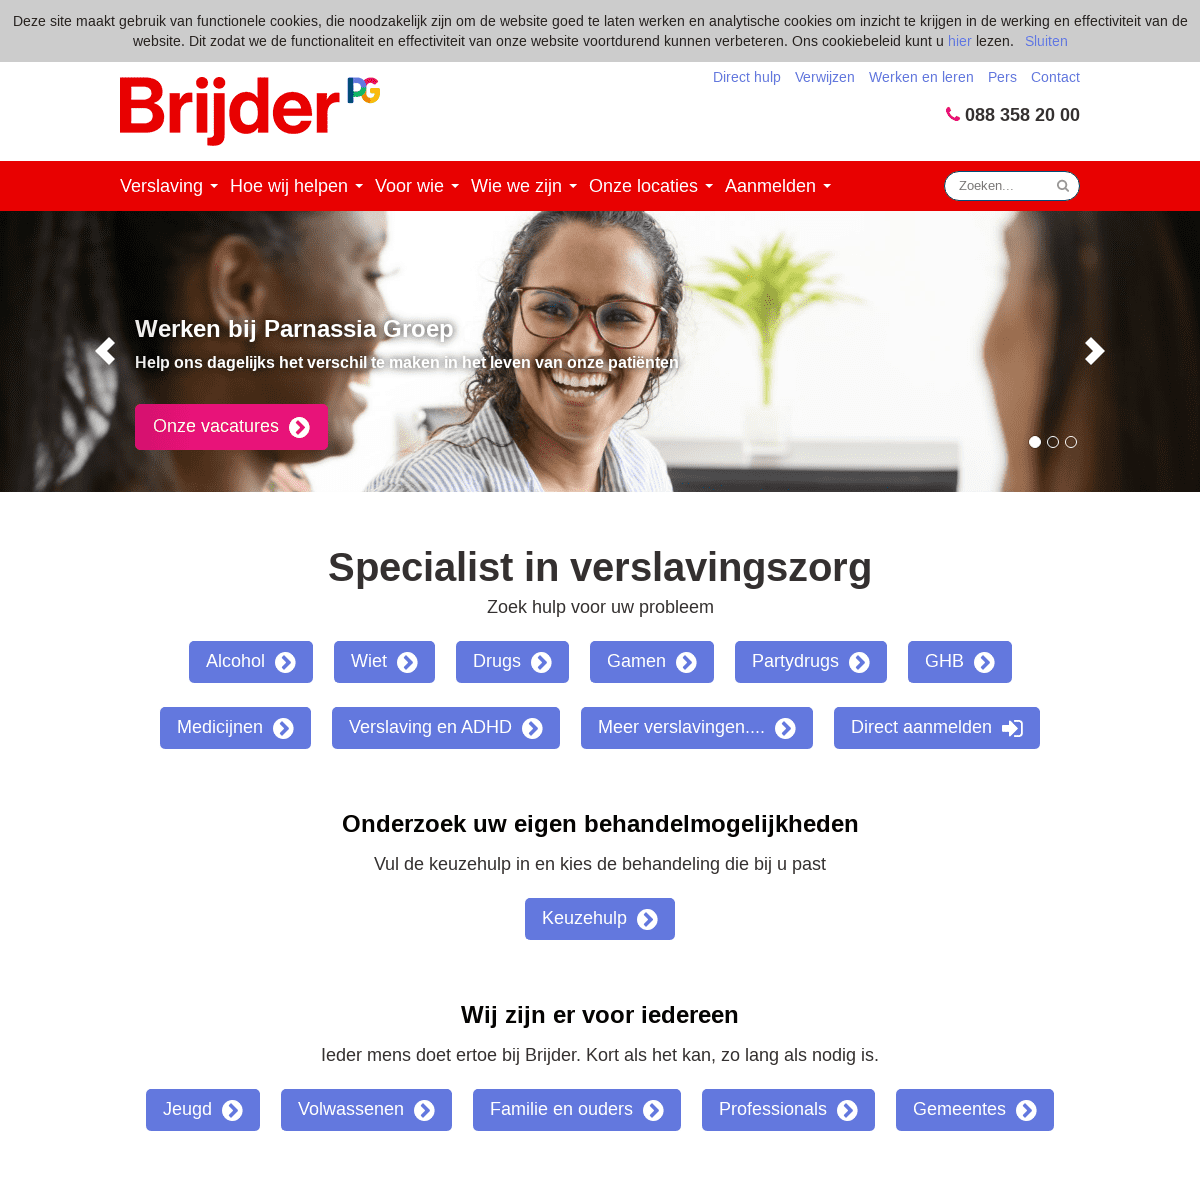 A complete backup of https://brijder.nl